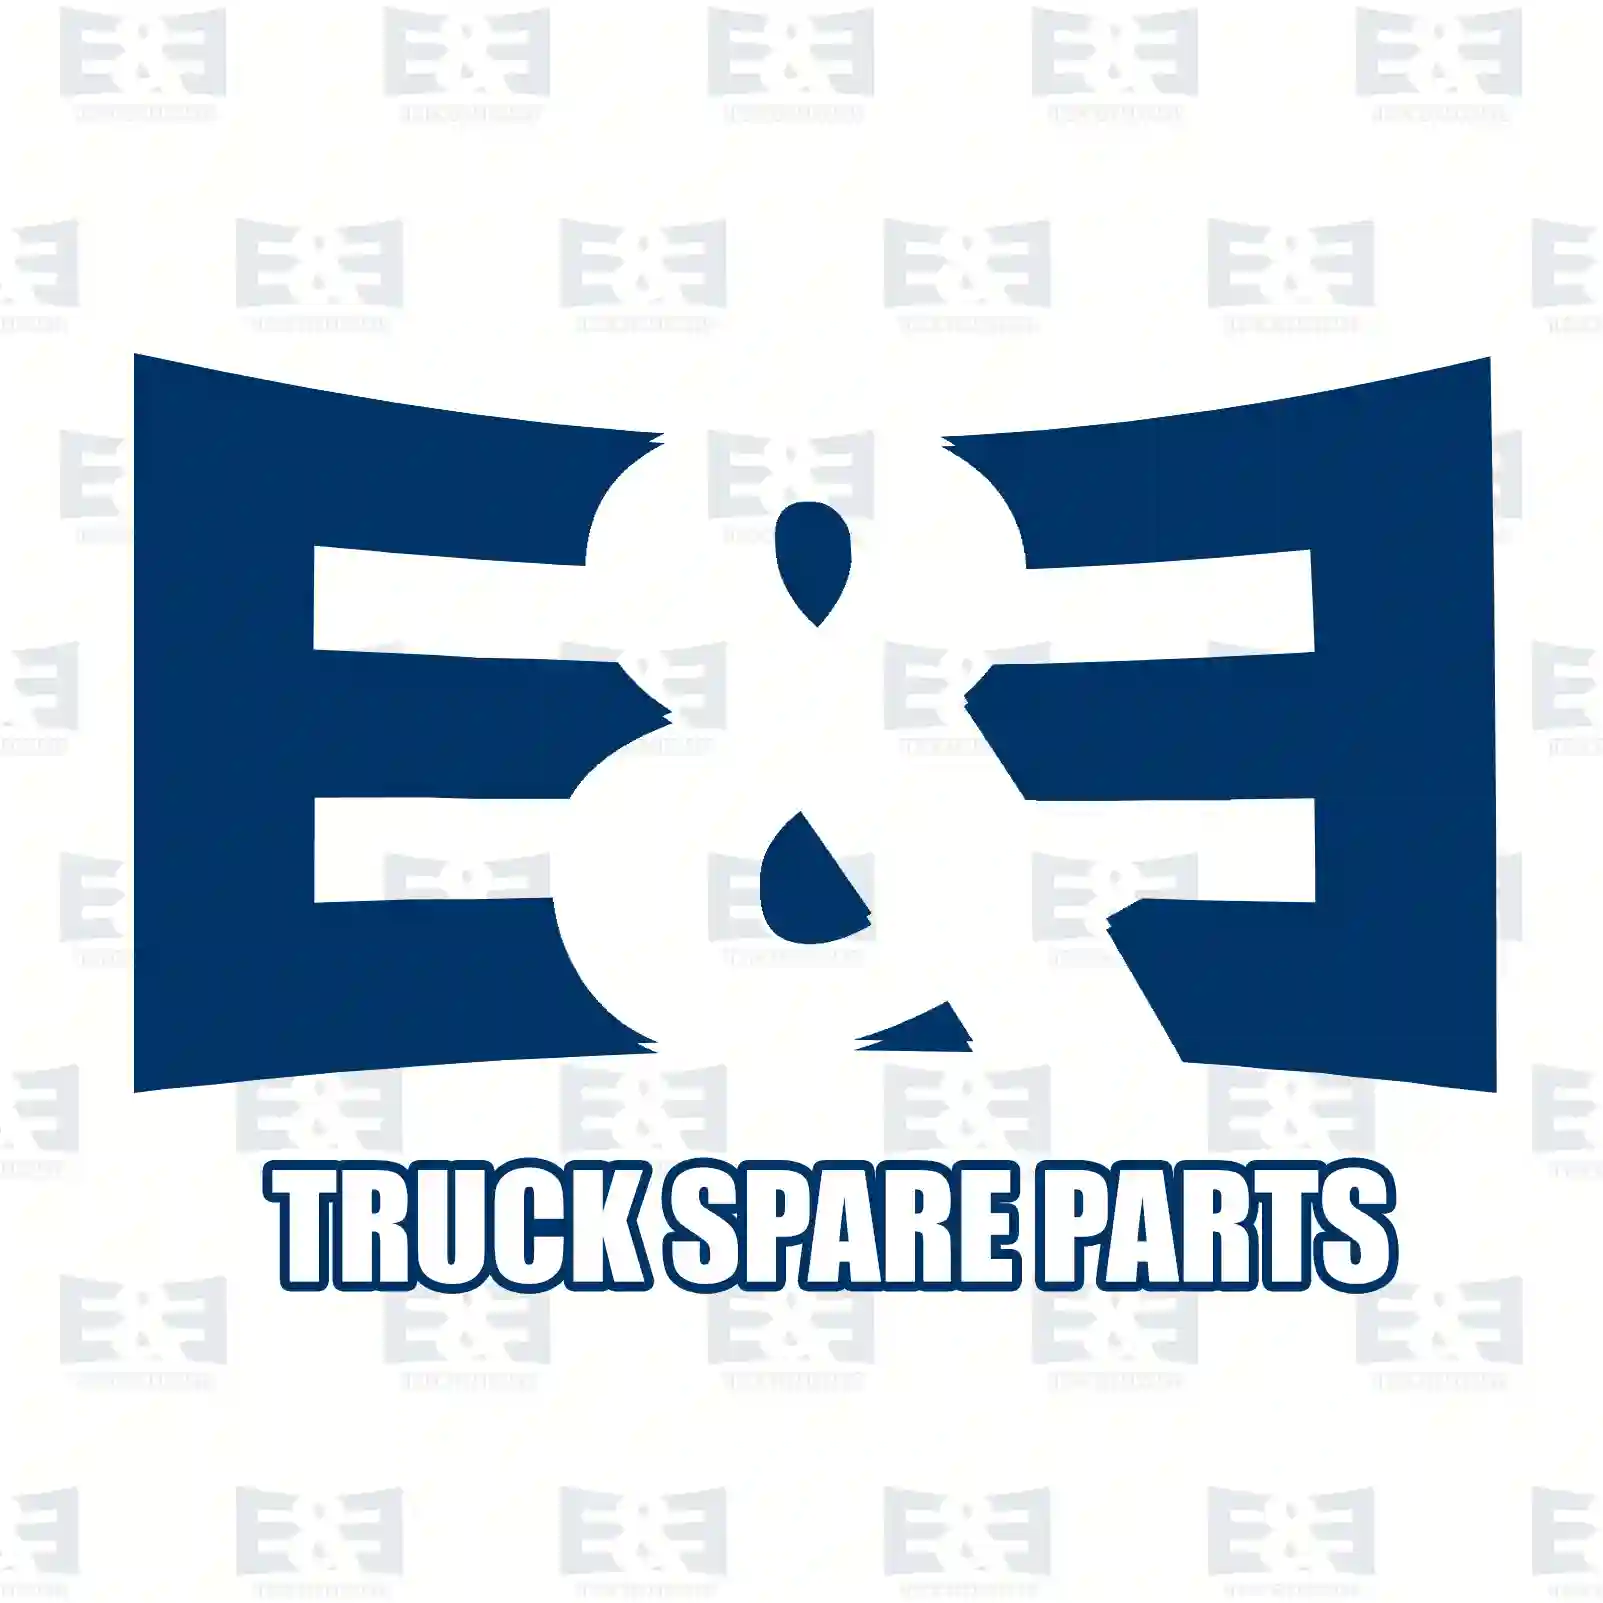 4-circuit-protection valve, 2E2295993, 0034315506, , , , , , , , , , ||  2E2295993 E&E Truck Spare Parts | Truck Spare Parts, Auotomotive Spare Parts 4-circuit-protection valve, 2E2295993, 0034315506, , , , , , , , , , ||  2E2295993 E&E Truck Spare Parts | Truck Spare Parts, Auotomotive Spare Parts